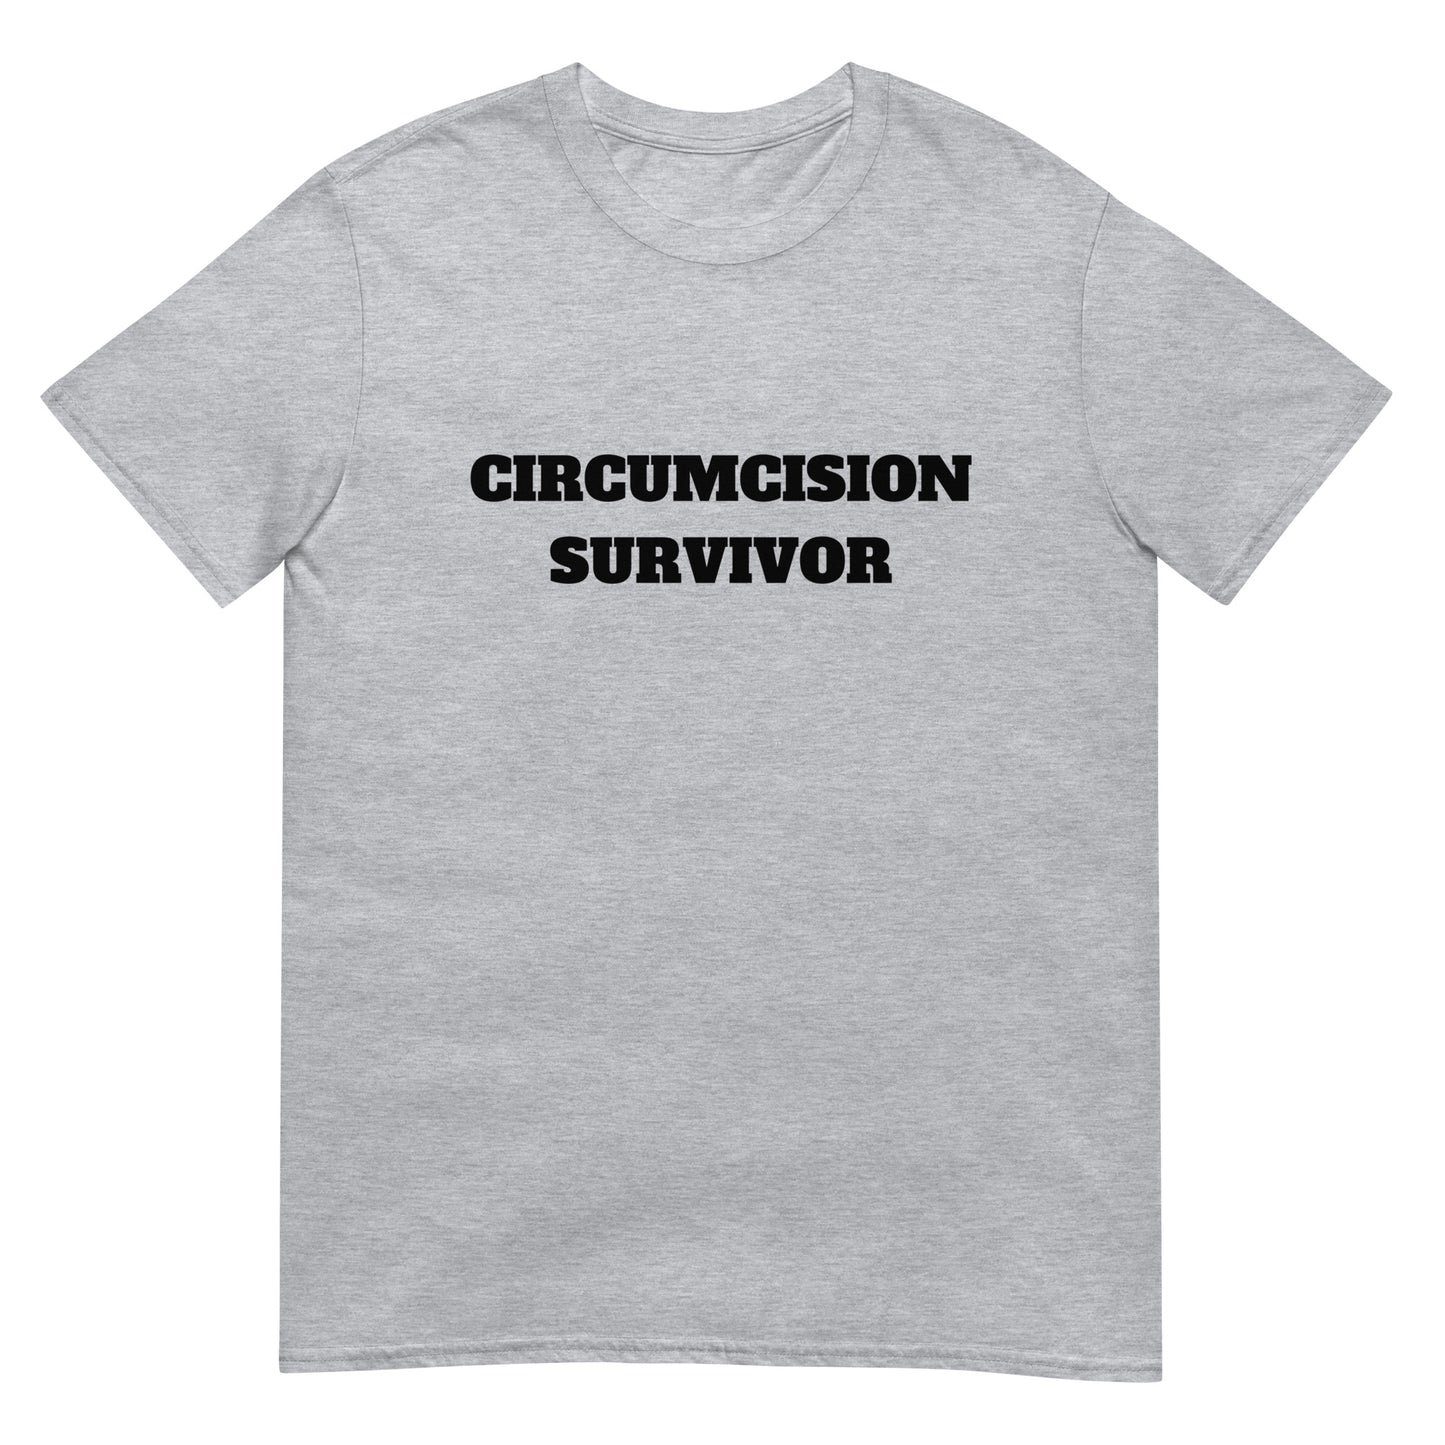 Circumcision Survivor Tee